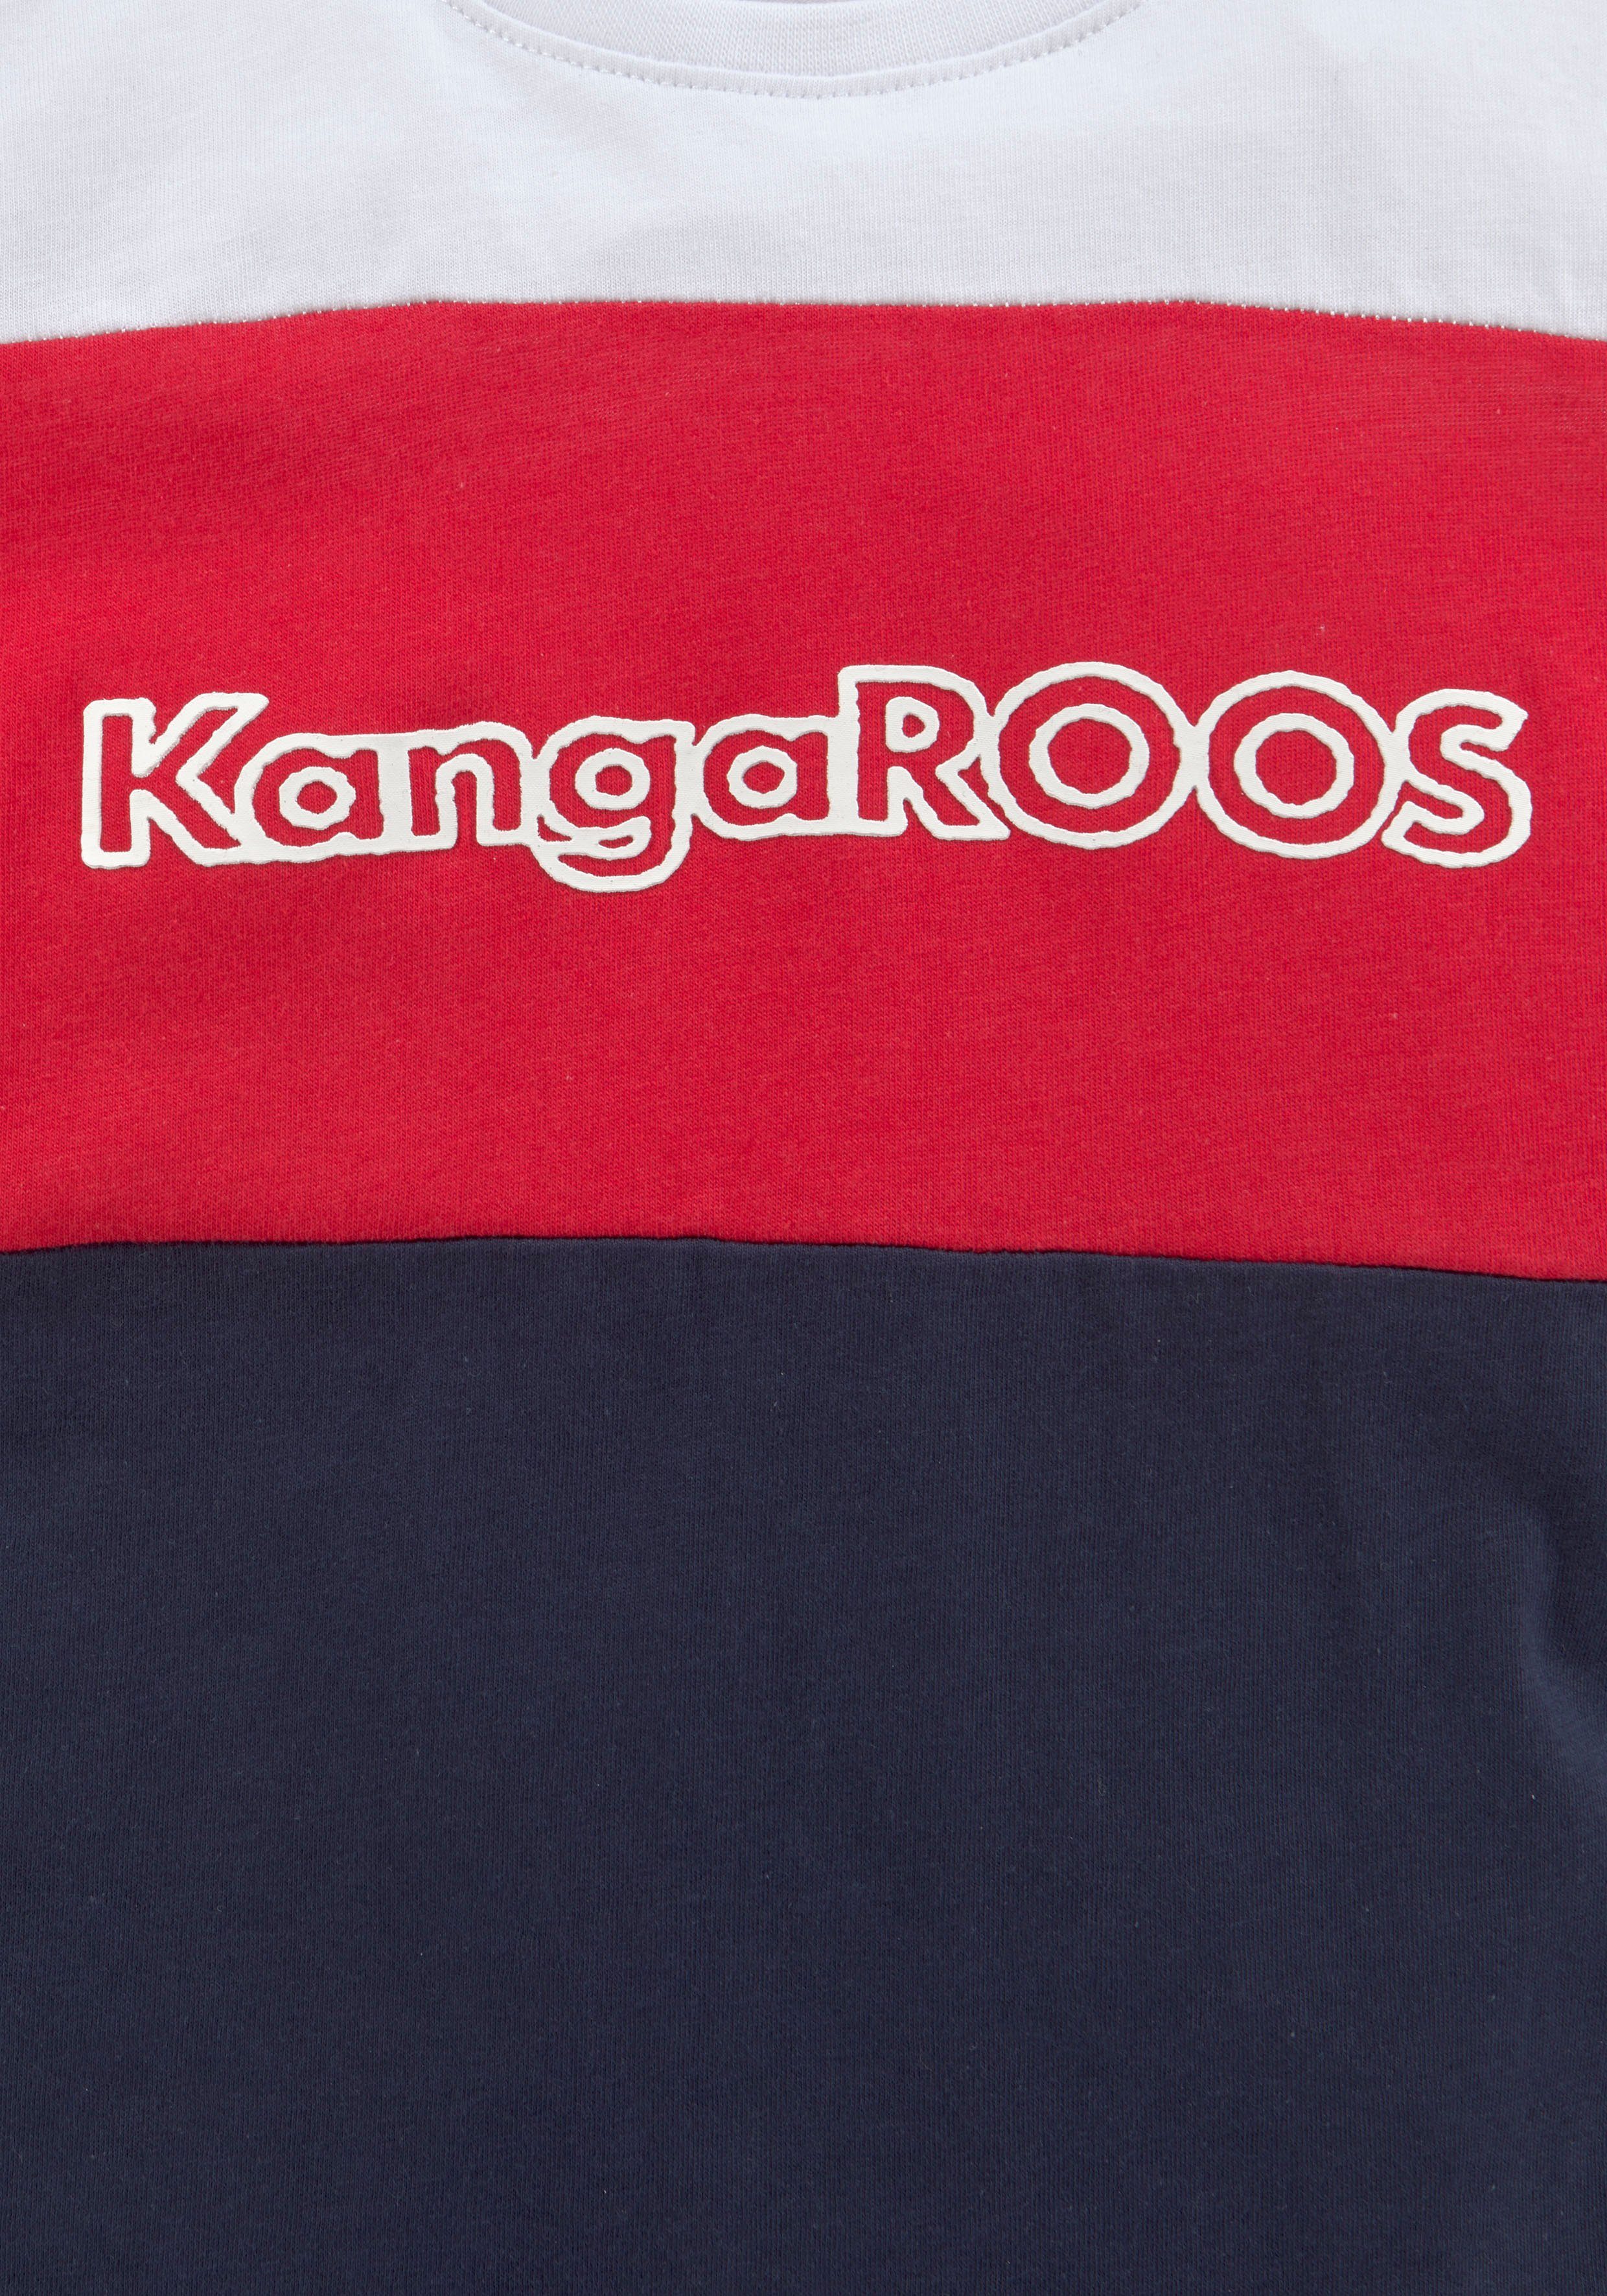 in Colorblockdesign KangaROOS T-Shirt